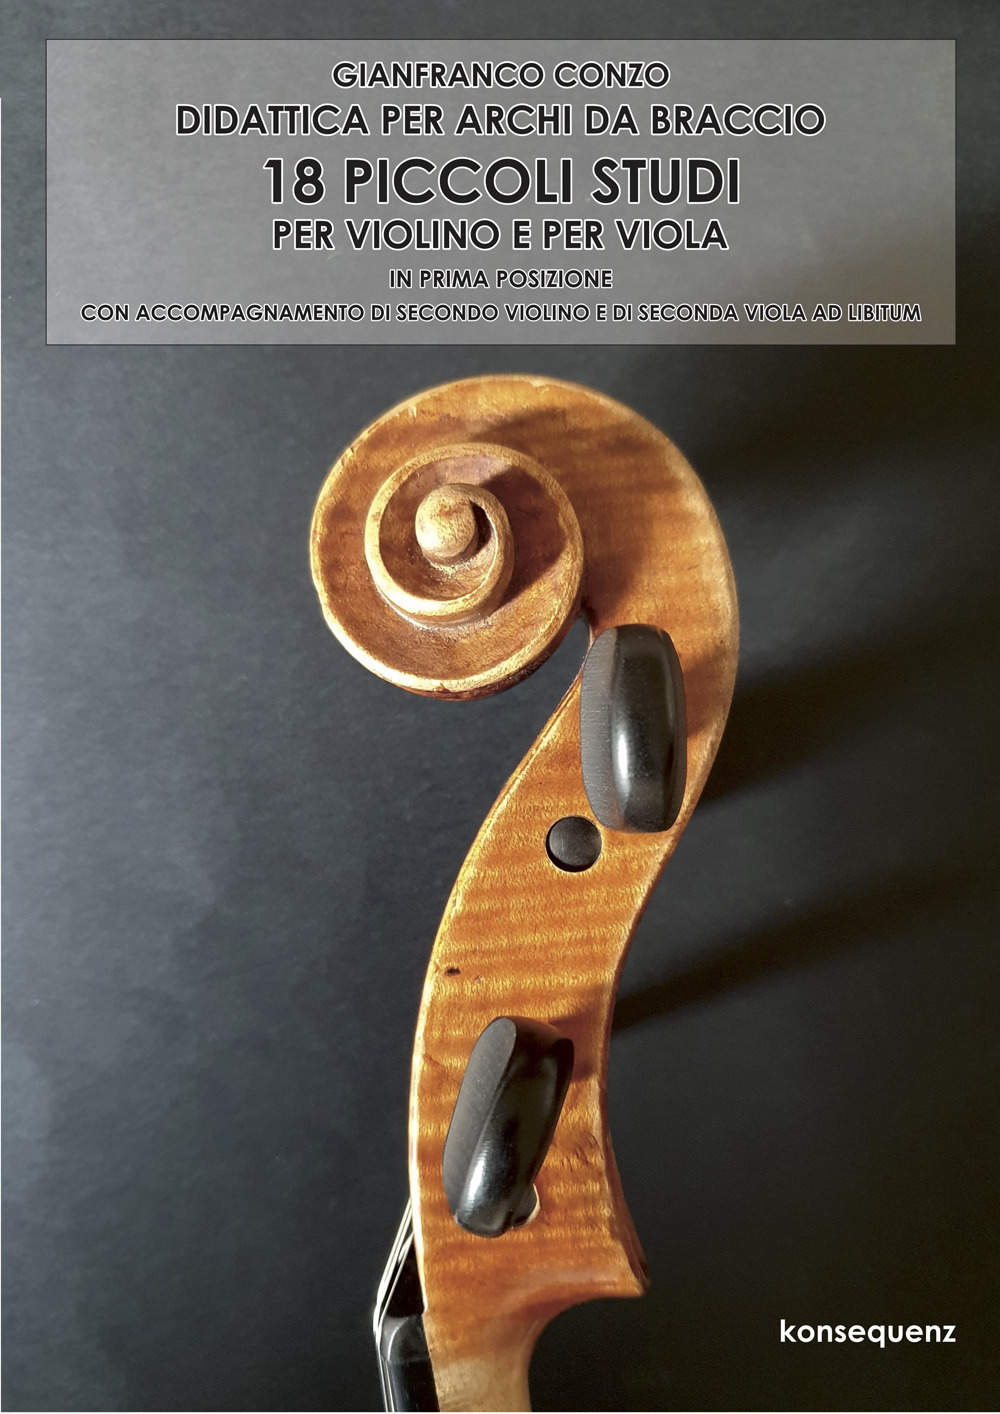 18 Piccoli studi per violino e per viola in prima posizione. Didattica per archi da braccio